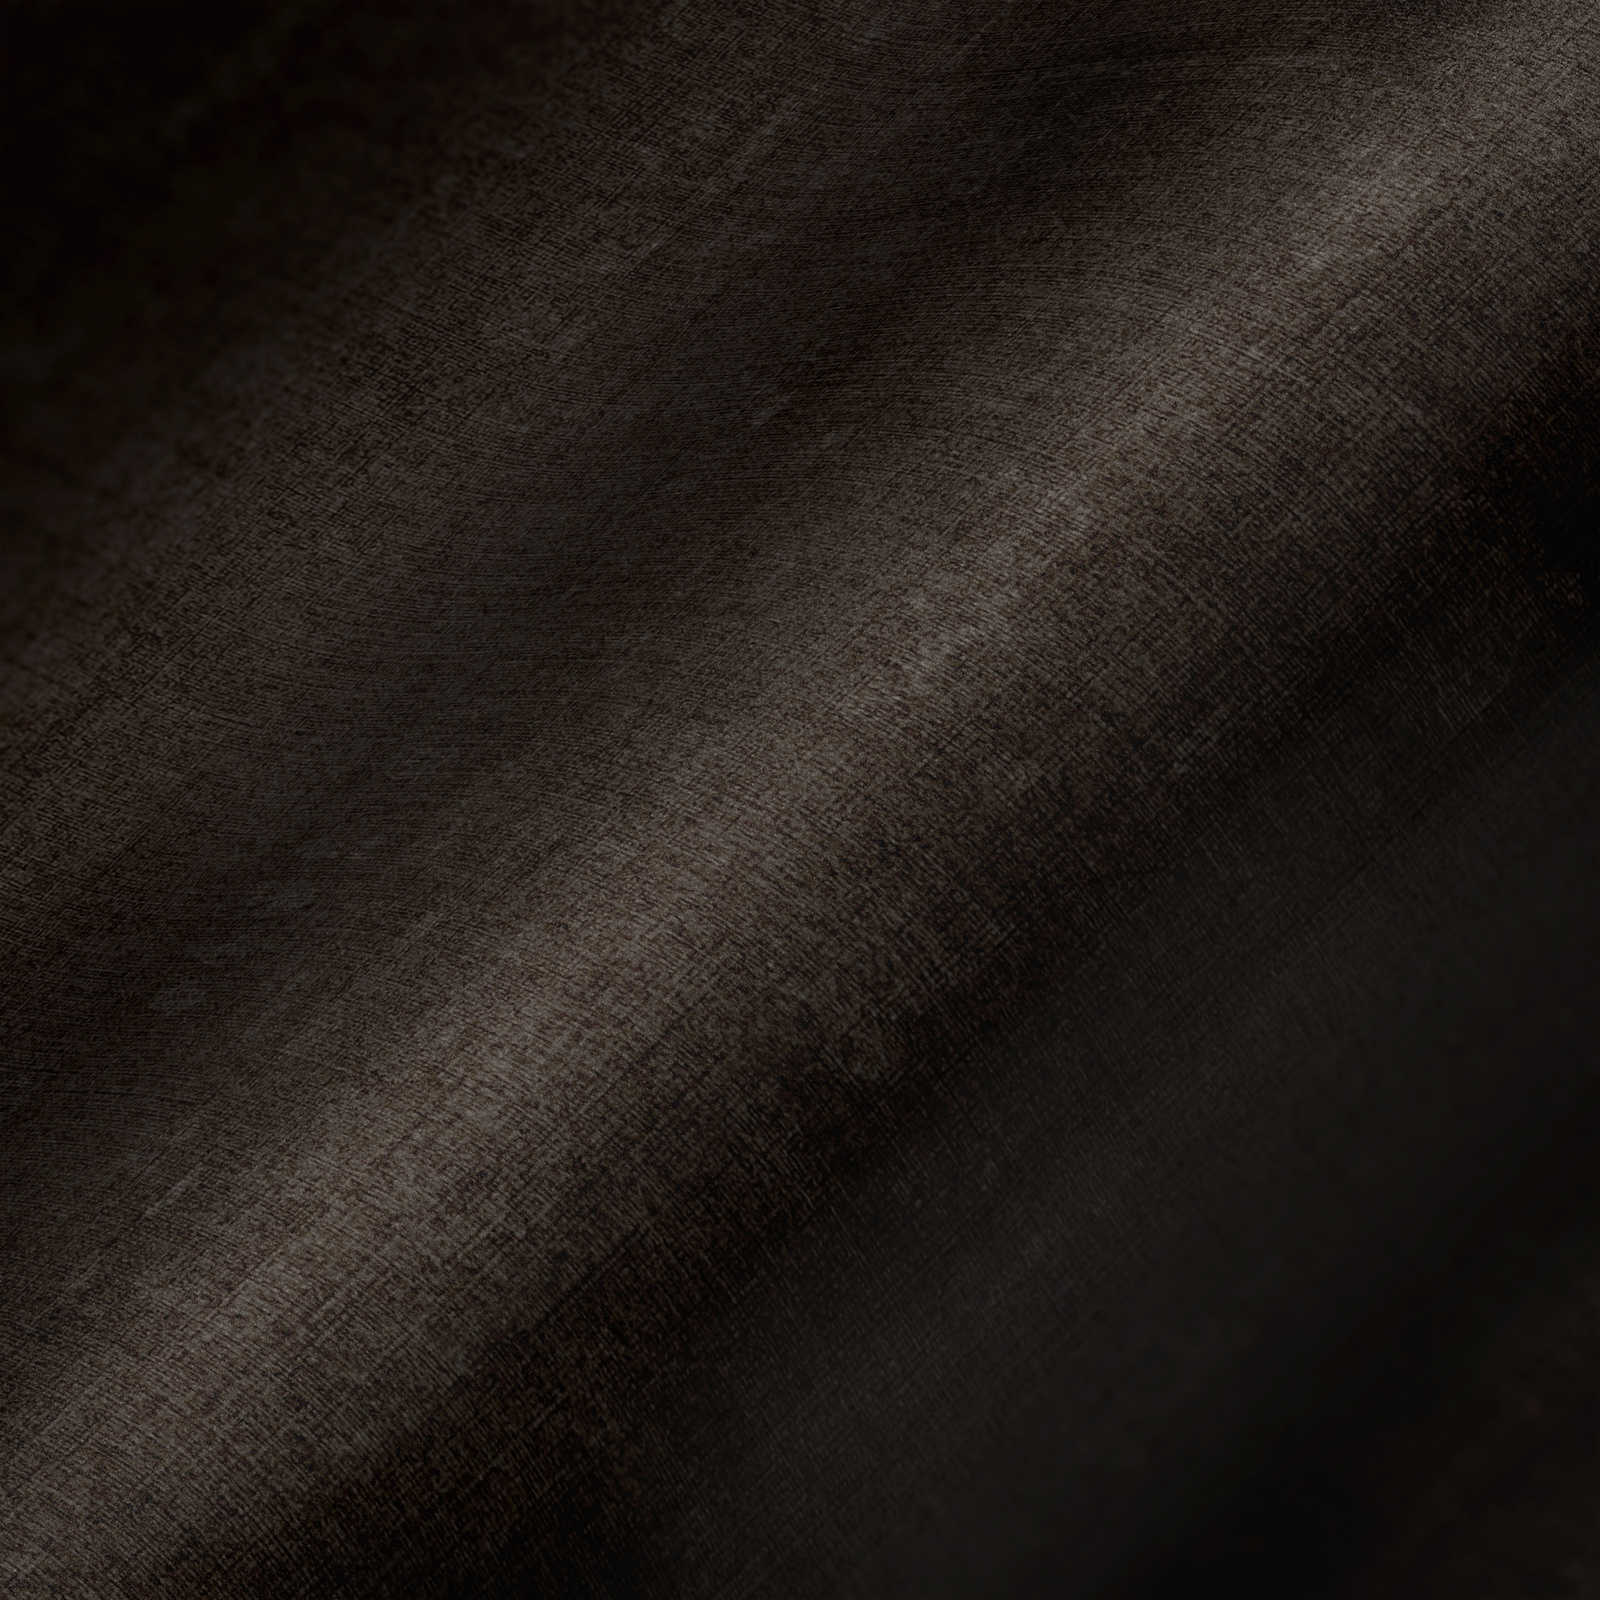             Gemêleerd behang effen met structuurdesign - grijs, zwart
        